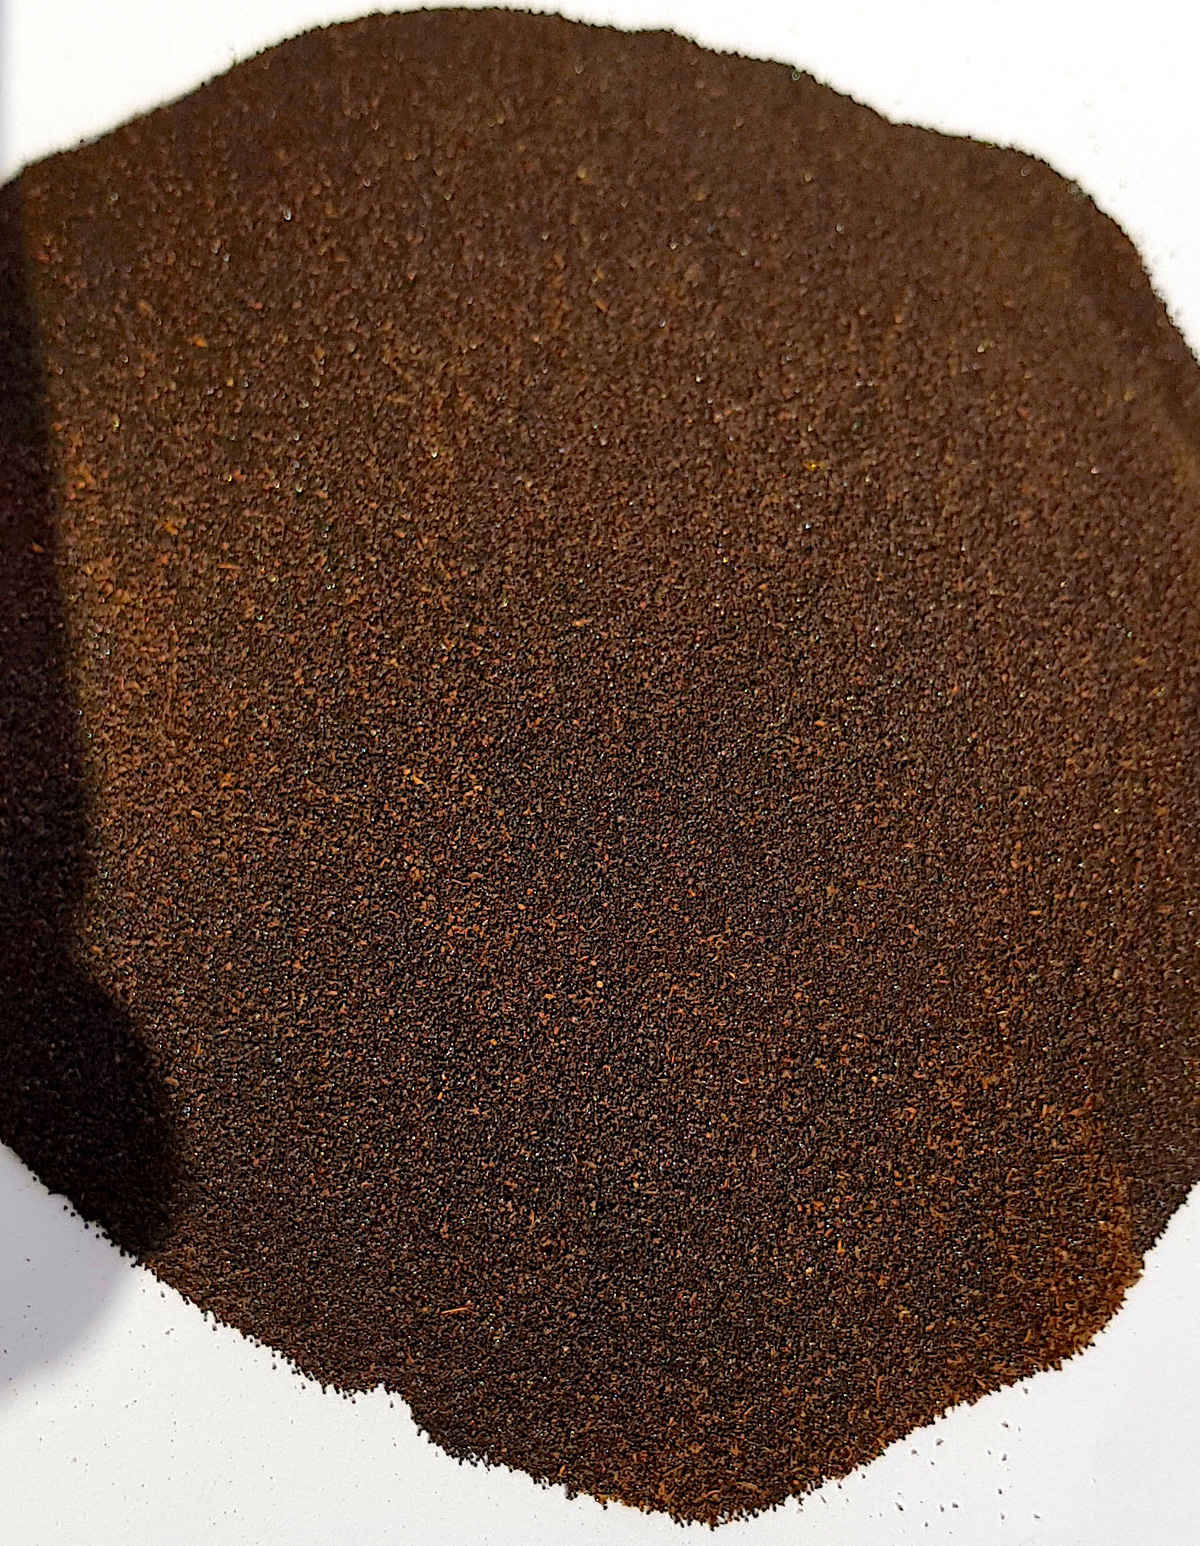 Vanillepulver aus der Tahiti Vanilleschote, 50 g, fein